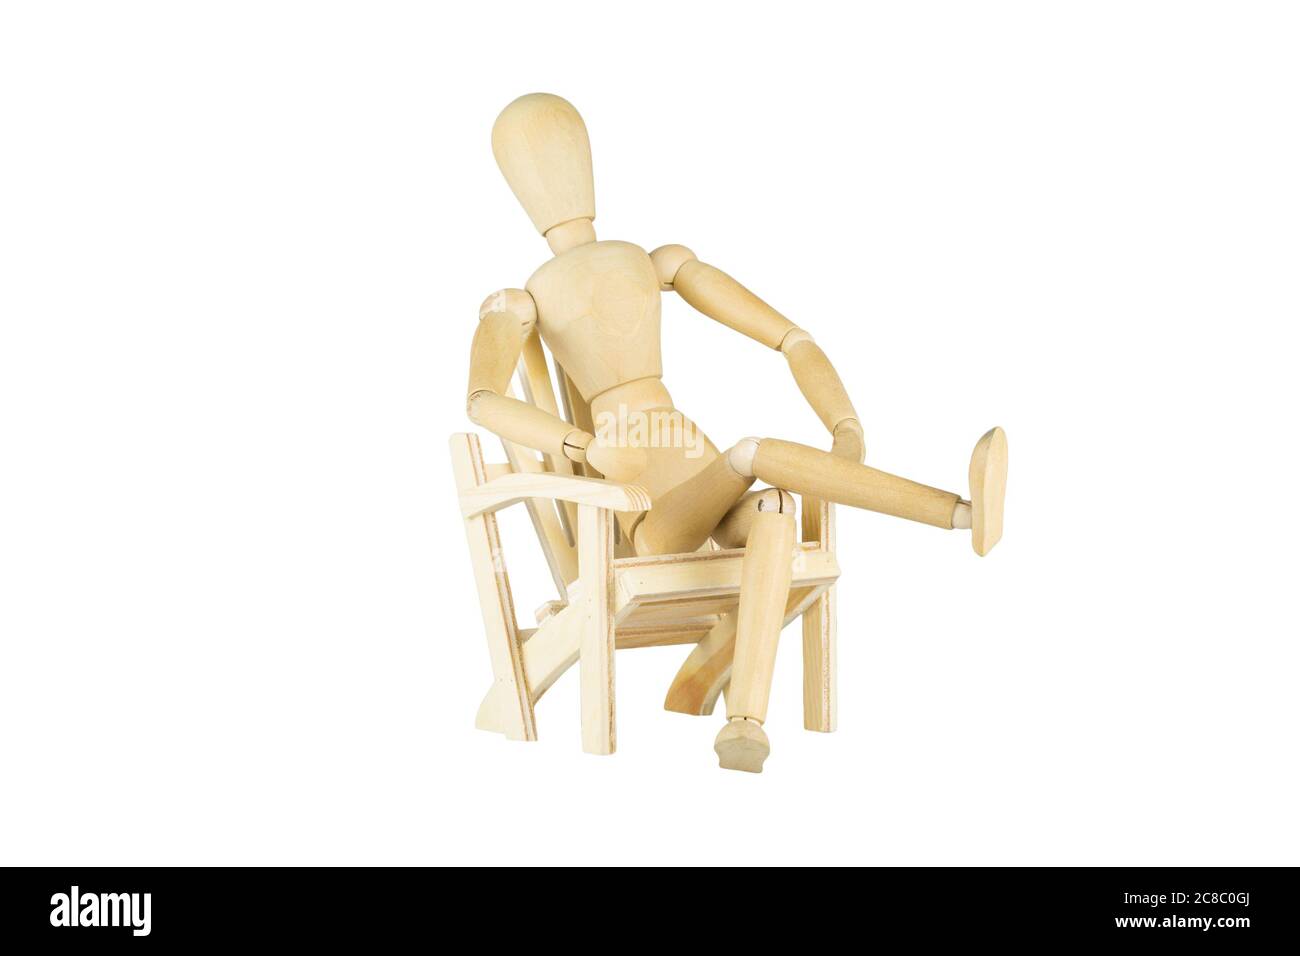 Una muñeca de madera está sentada en una silla de madera en miniatura sobre fondo blanco Foto de stock